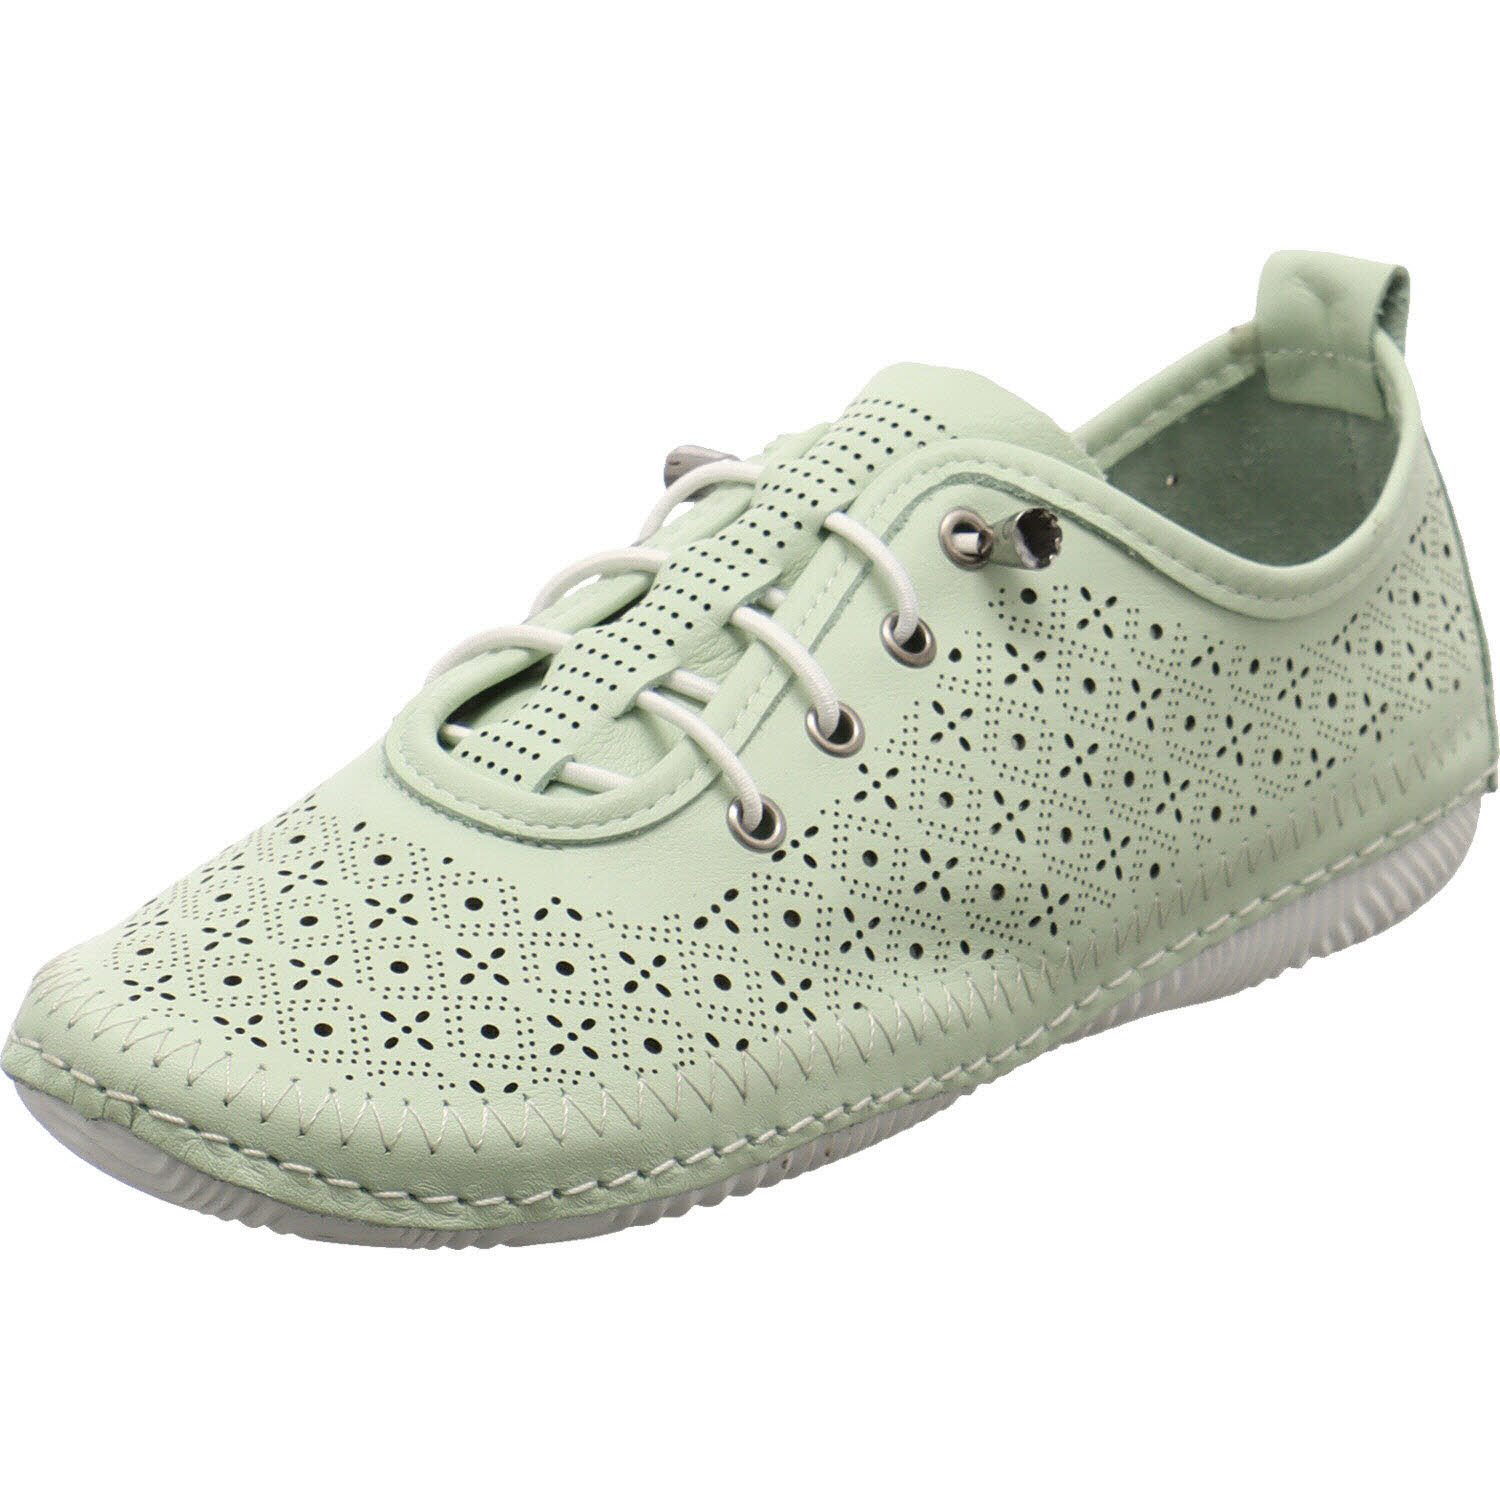 Damen Sneaker low von Cosmos Comfort auch in Grün erhältlich